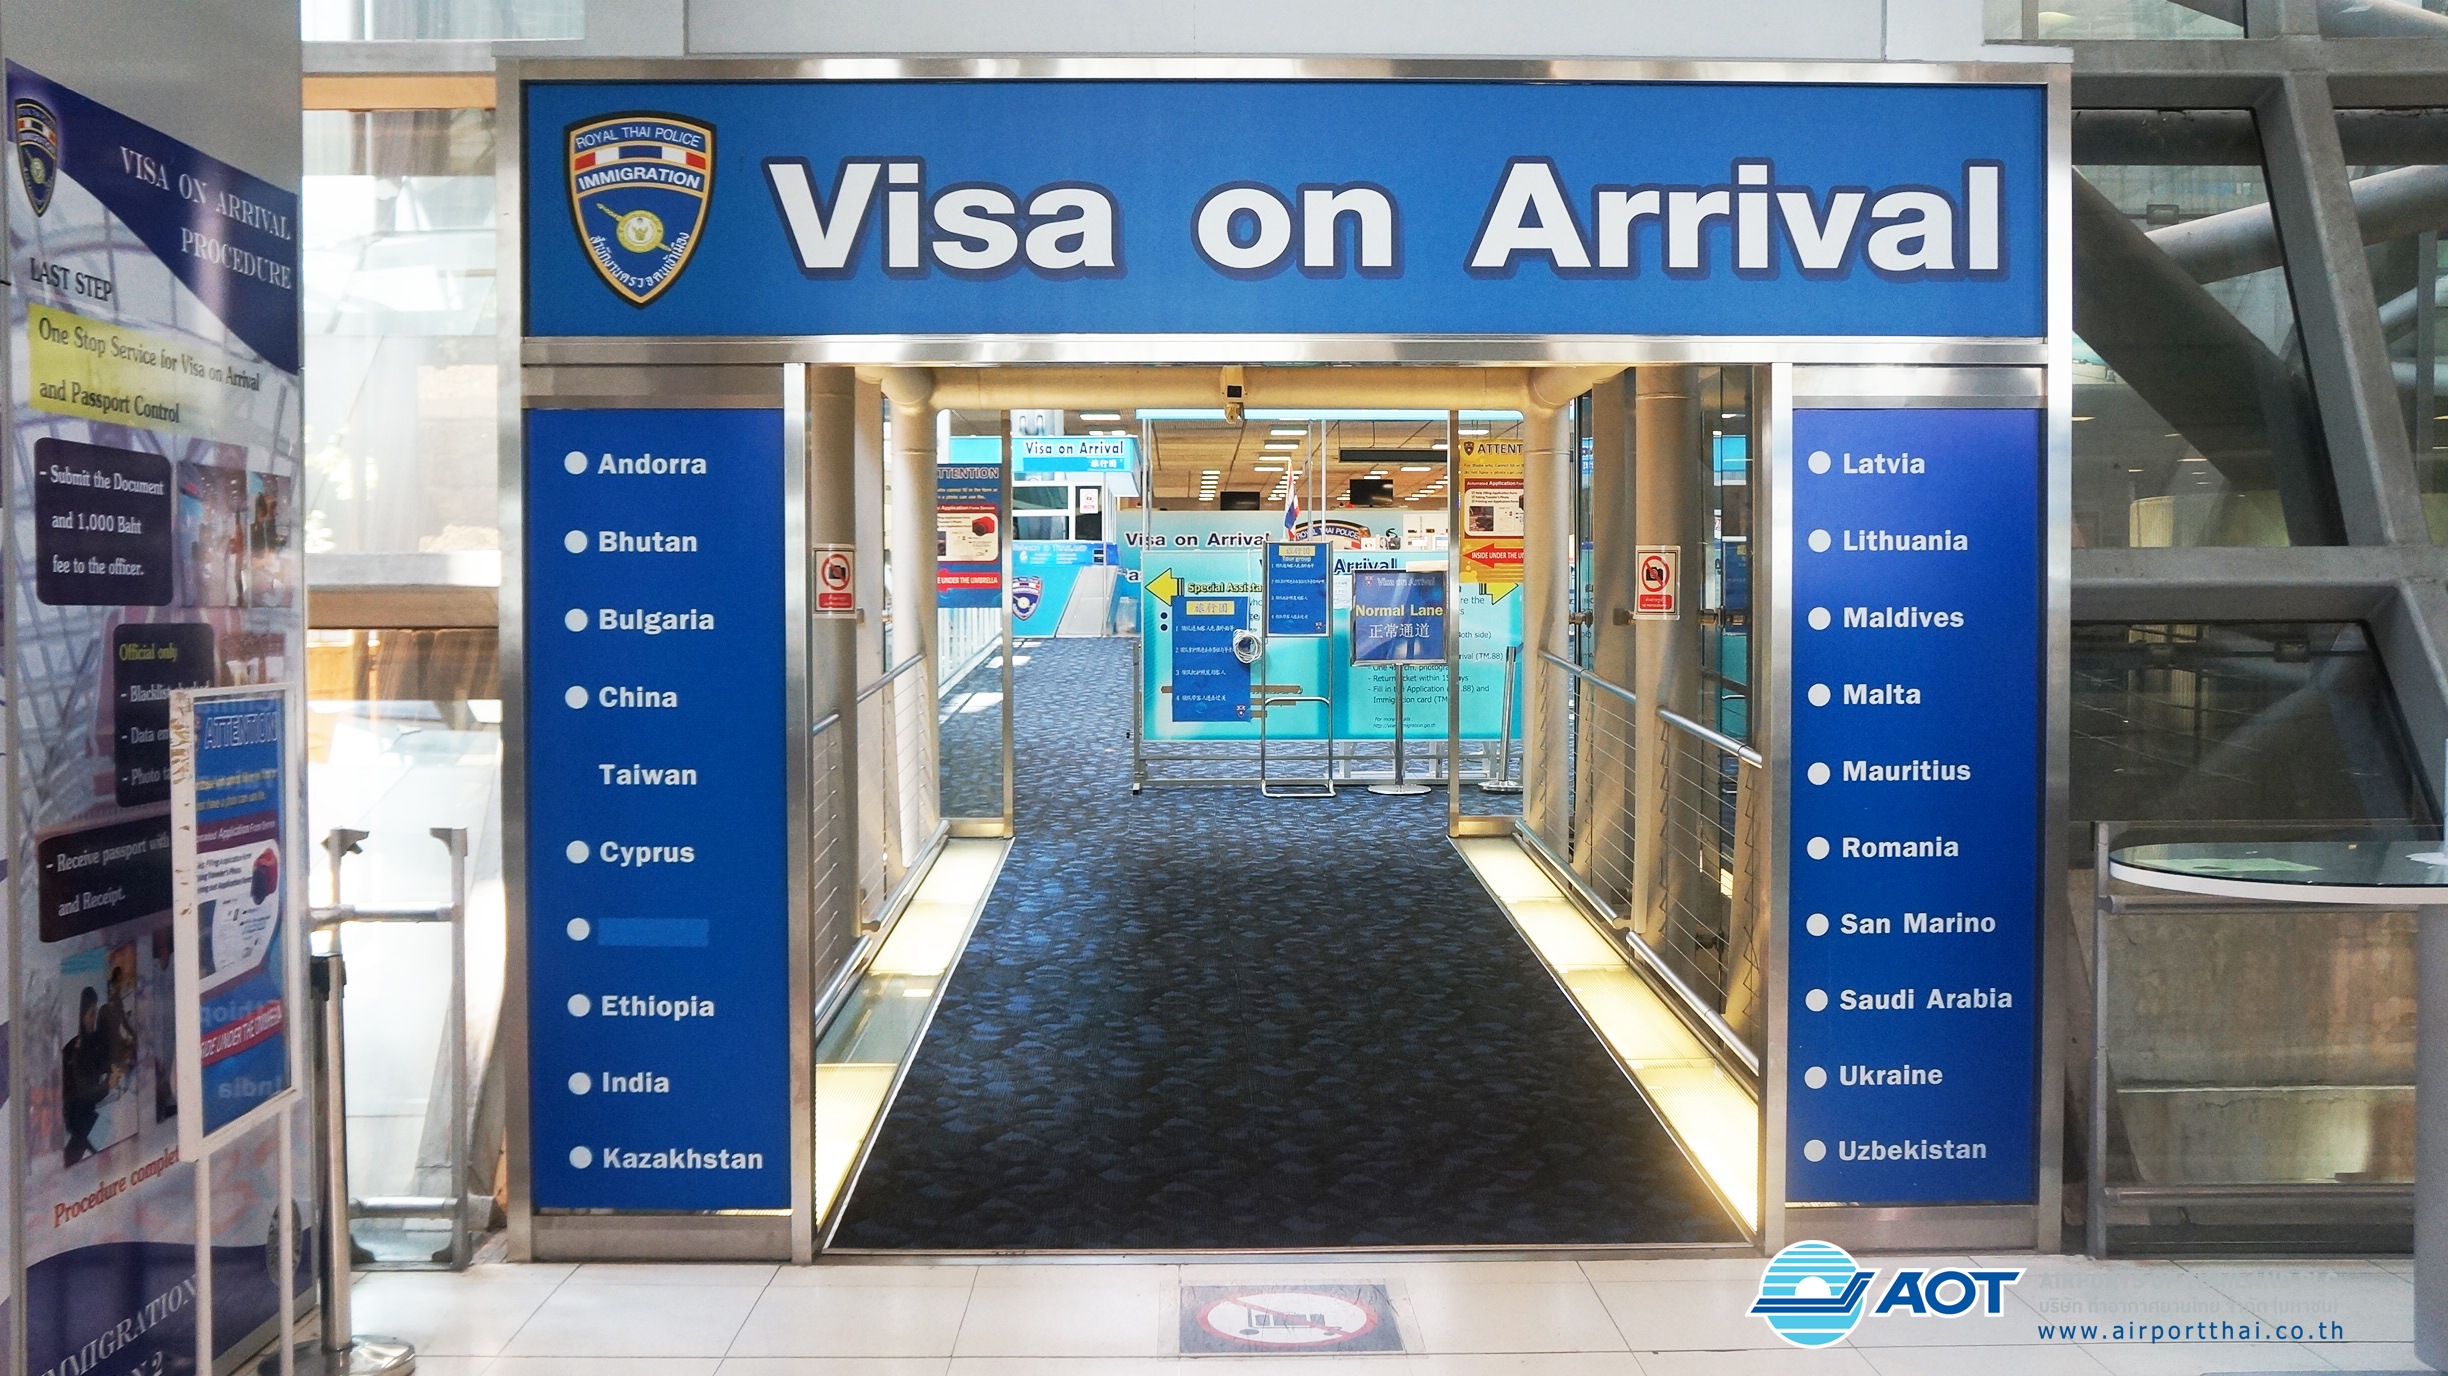 Visa on Arrival ประตูสู่การเที่ยวต่างประเทศอีกหลายแห่งทั่วโลก